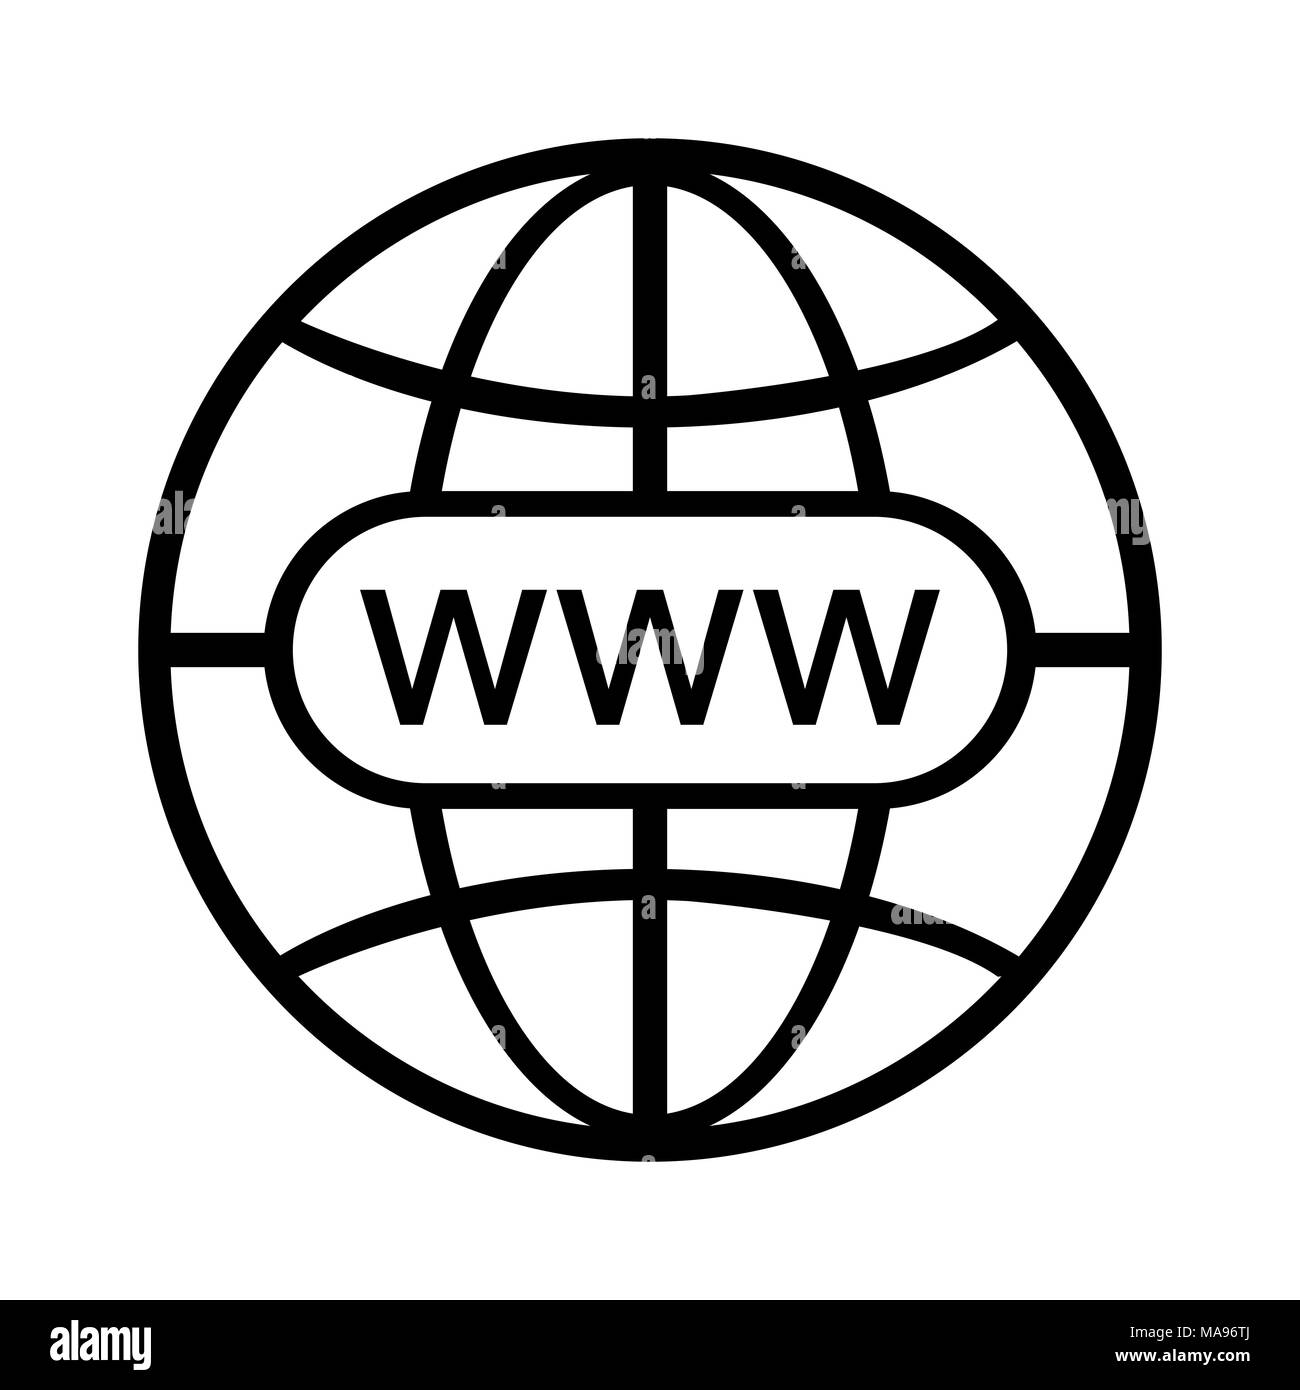 Www Icona Vettore Sito Web Symbol Moderno E Semplice Piatto Illustrazione Vettoriale Per Sito Web O Mobile App Immagine E Vettoriale Alamy